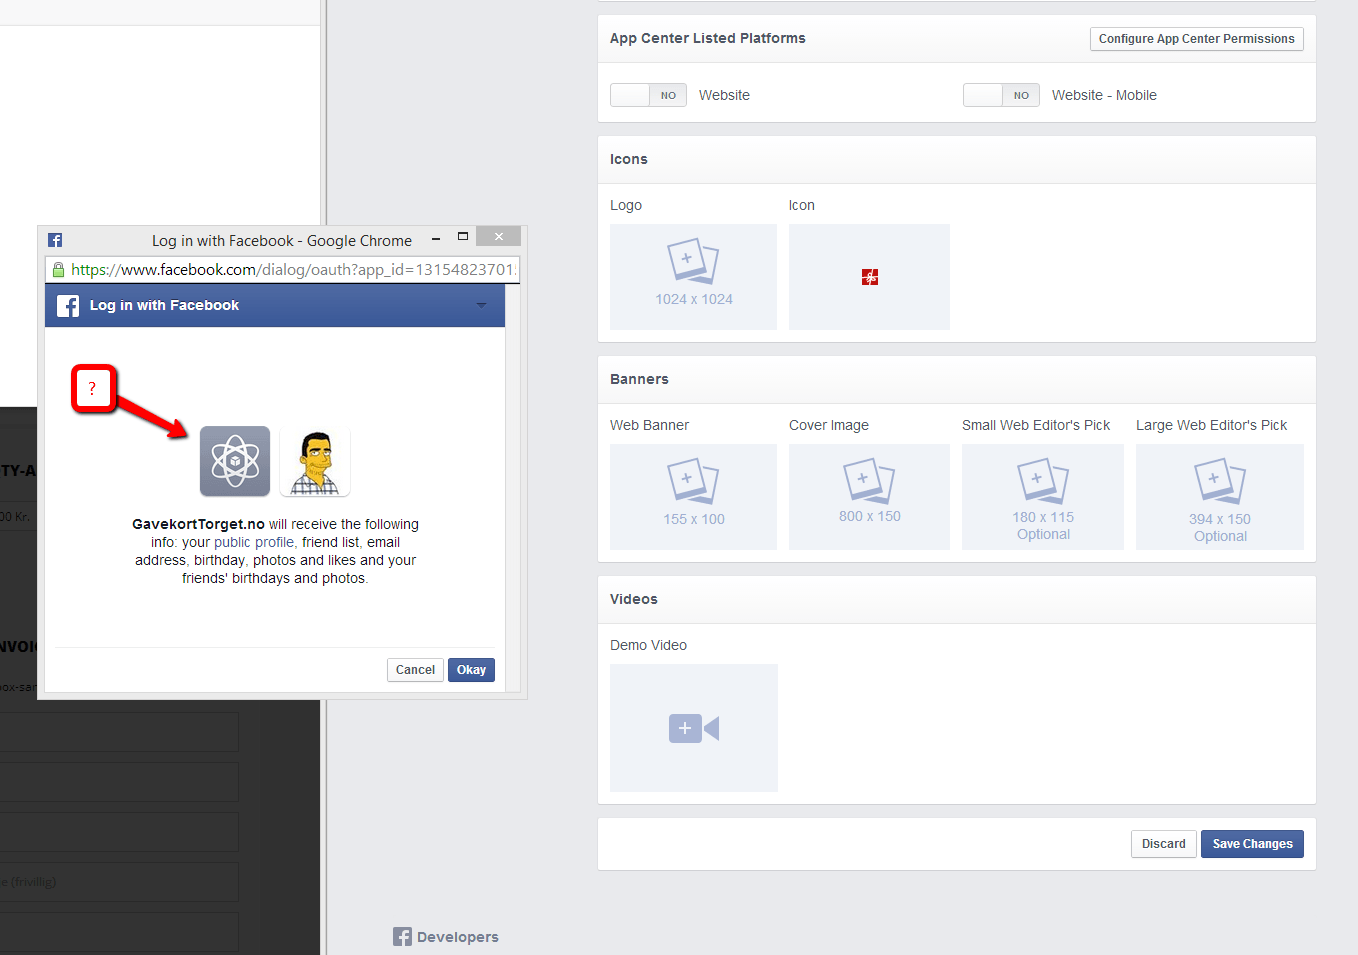 Facebook App Logo - Facebook App Developer Logo is gone? - Web Applications Stack Exchange